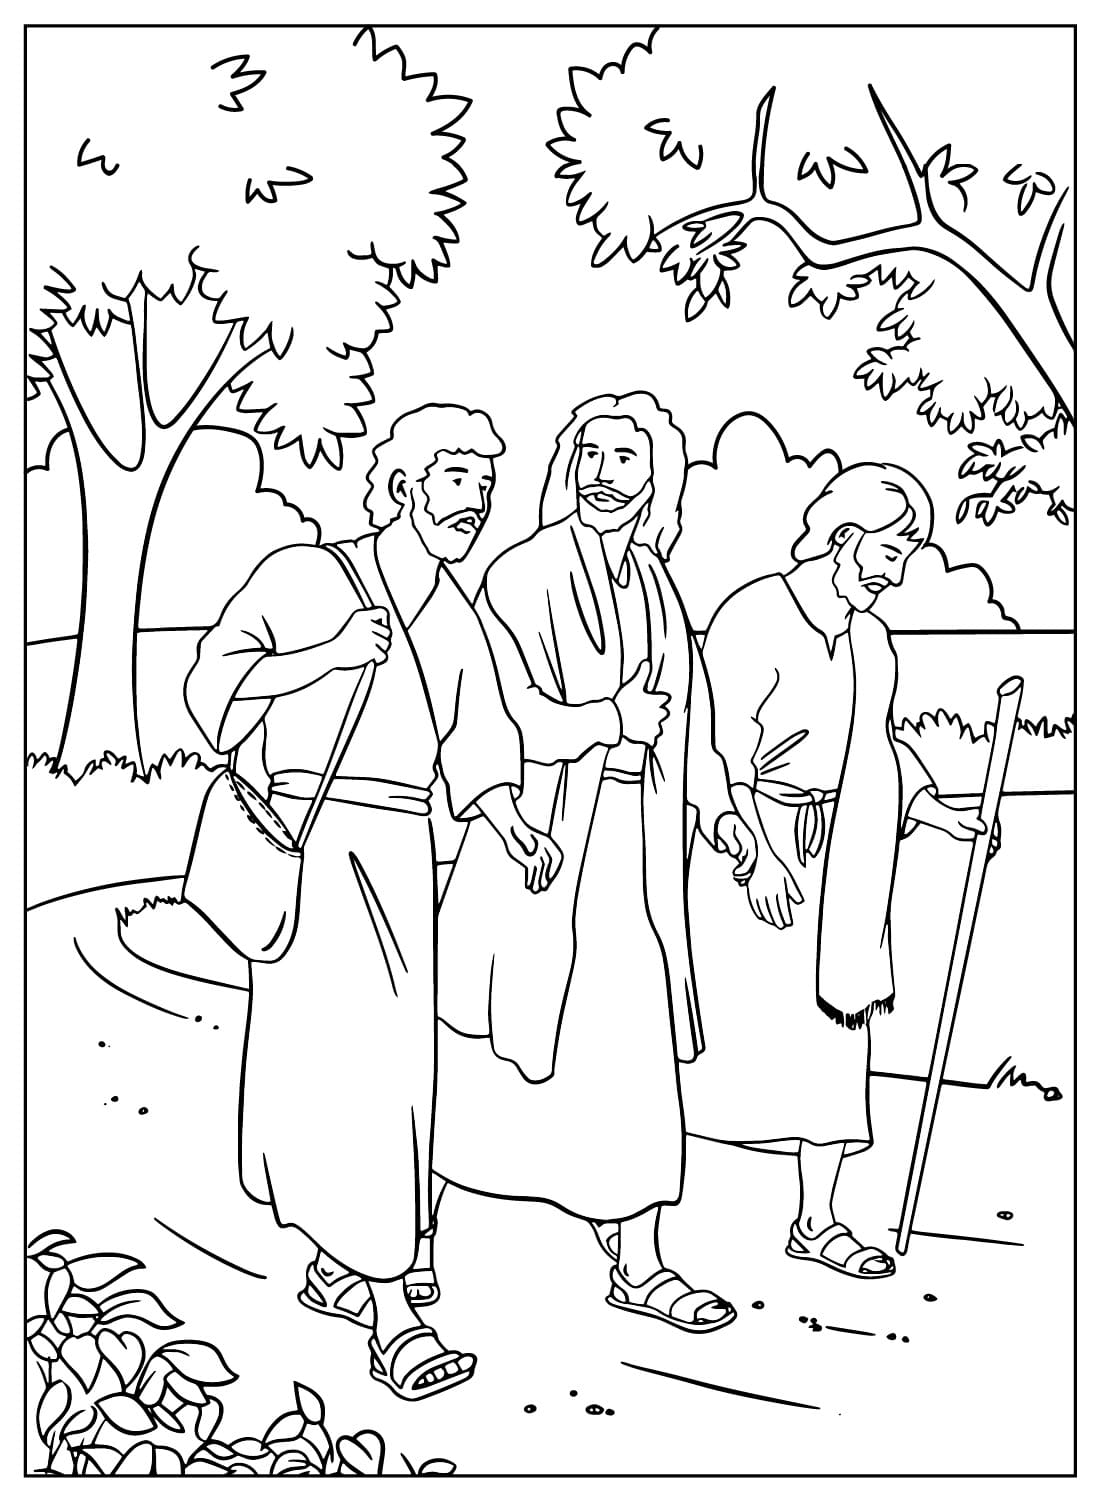 Иисус с двумя учениками по дороге в Эммаус